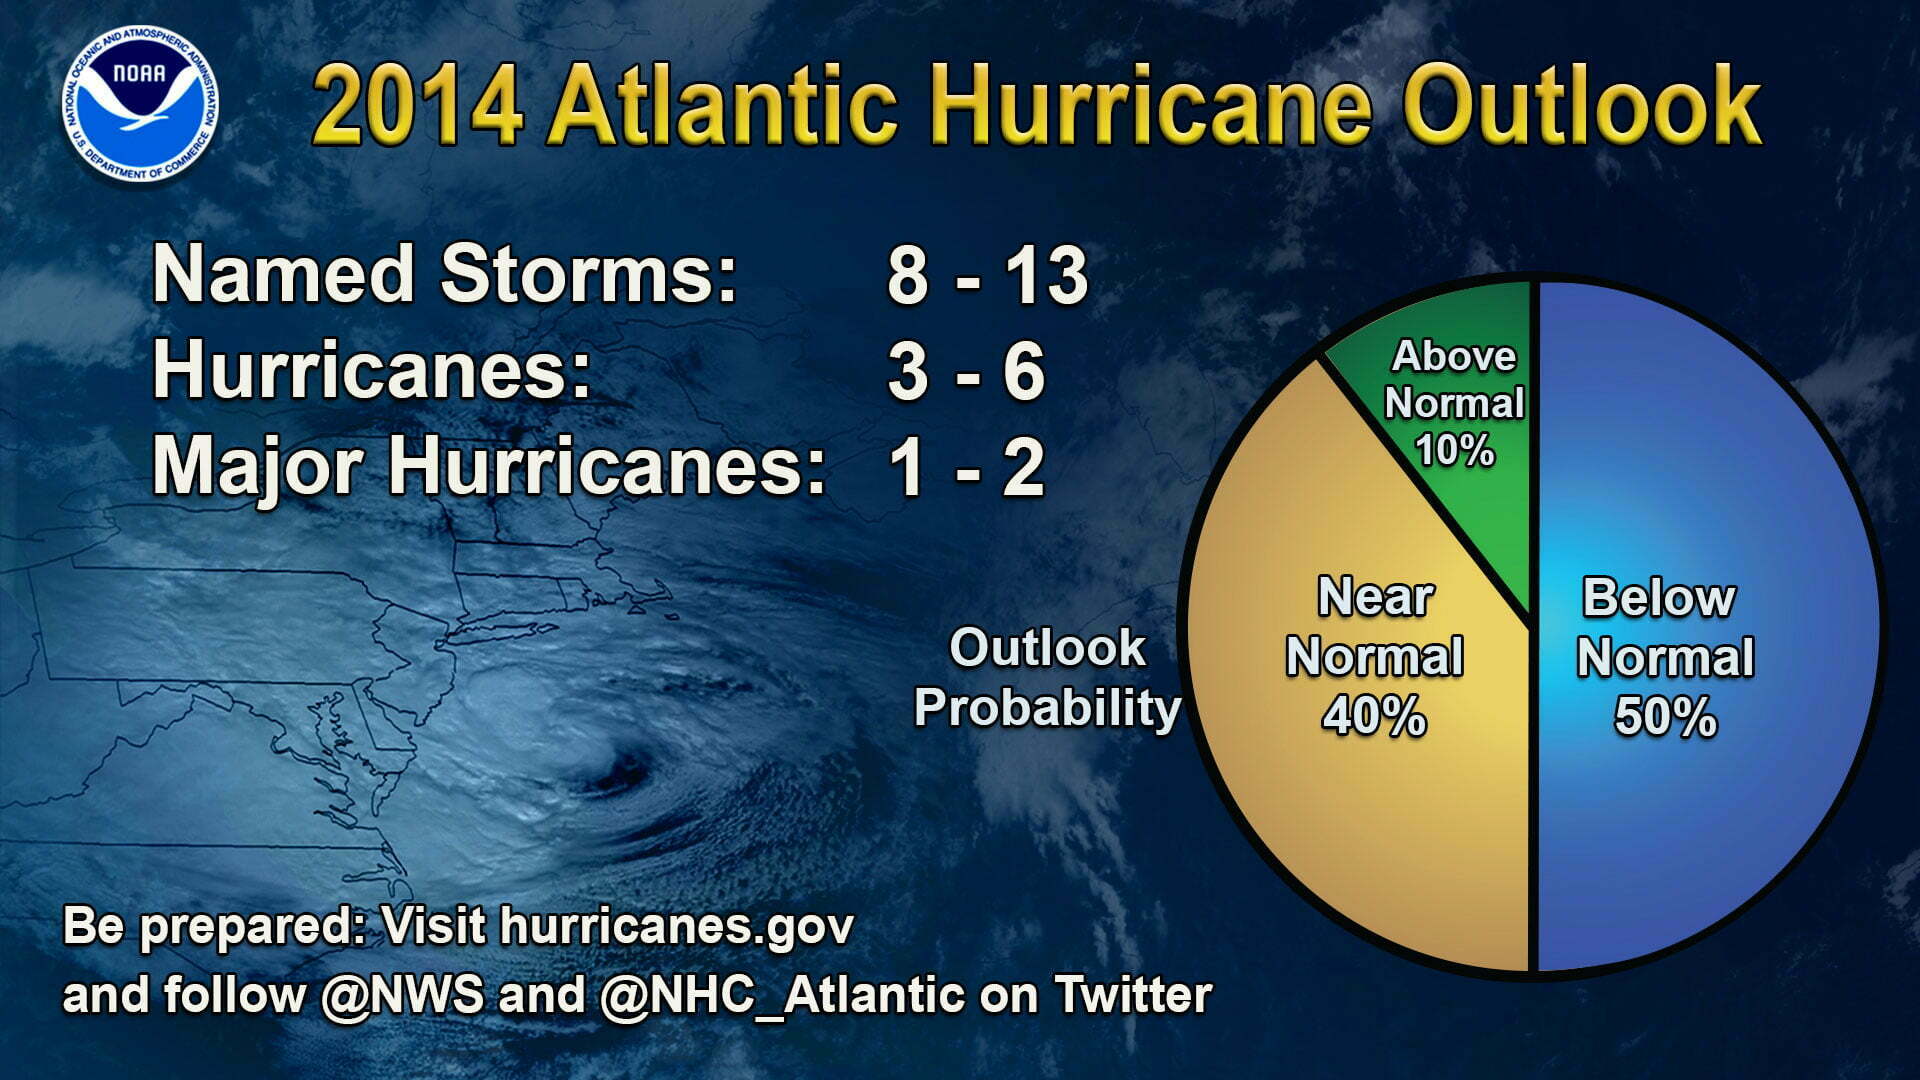 Imagem tabela temporada de furacões no atlântico norte